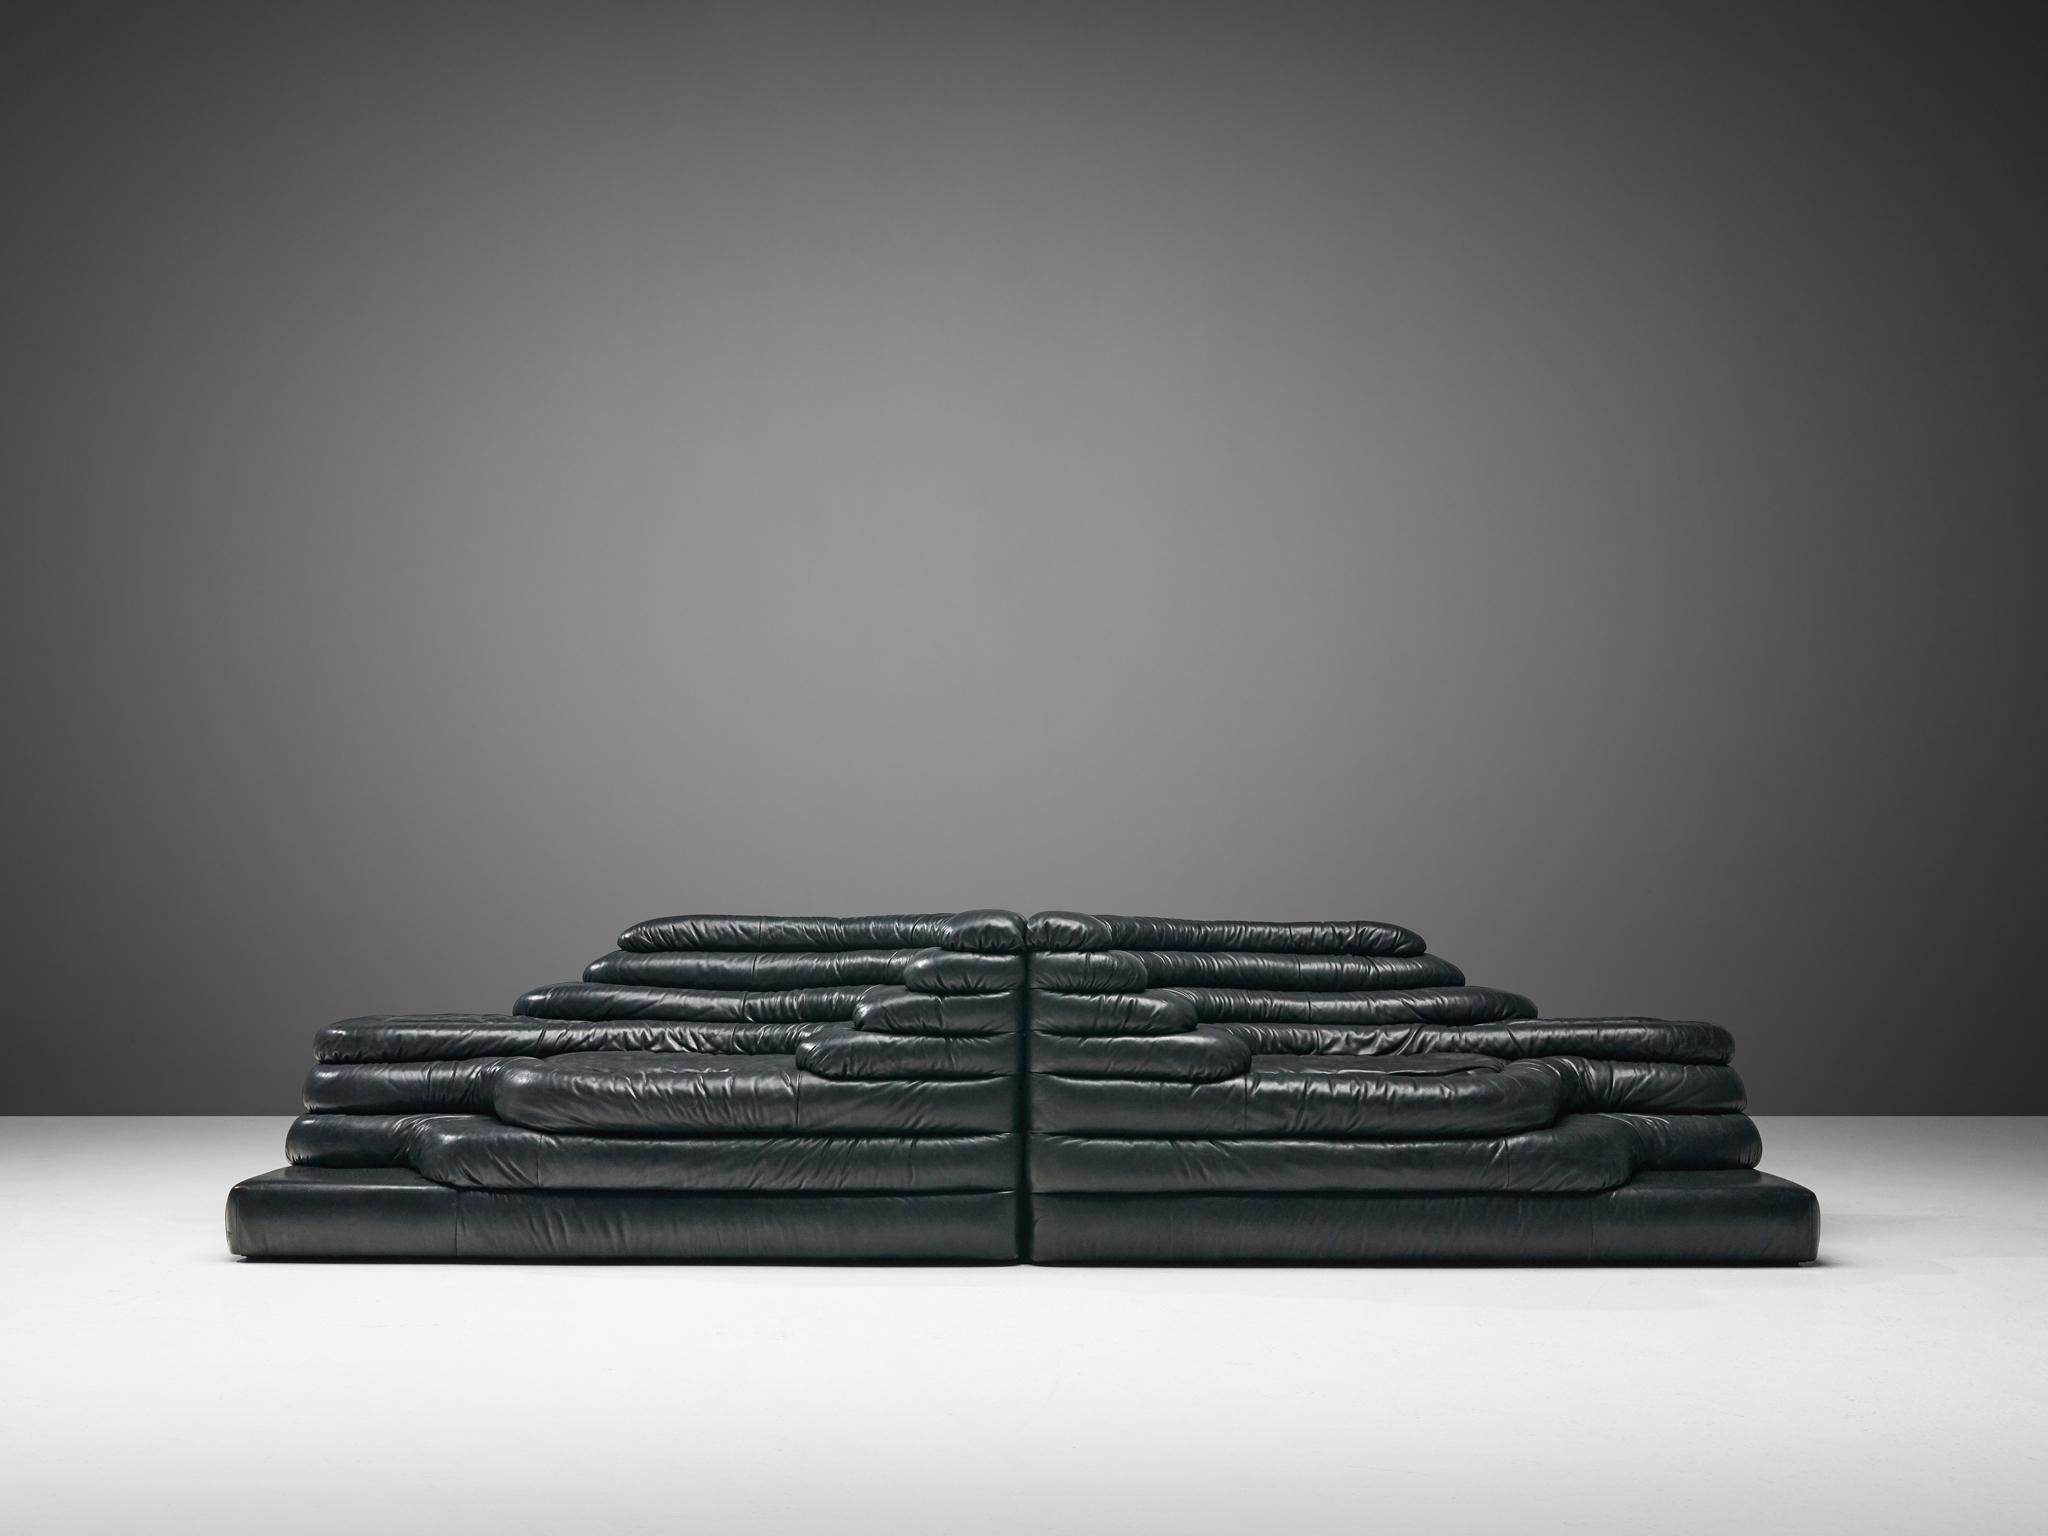 Swiss De Sede 'Terrazza' Landscapes in Black Leather by Ubald Klug